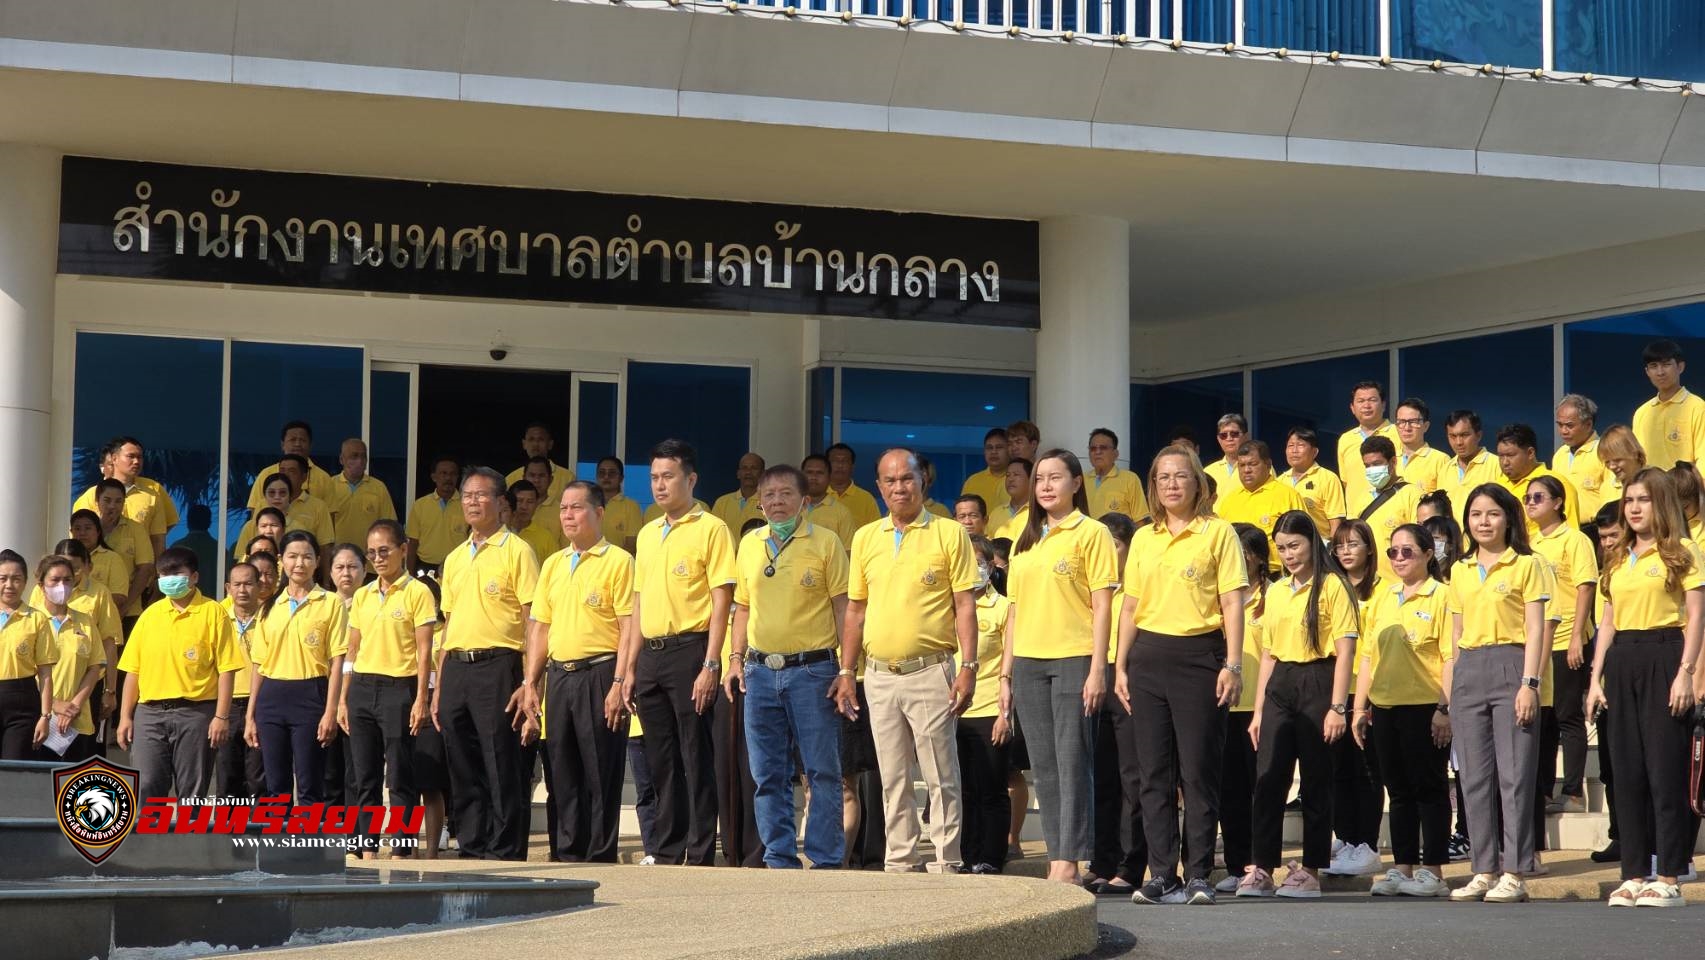 ปทุมธานี-ทต.บ้านกลาง ทำตามคำสั่งมหาดไทยใส่เสื้อเหลืองทุกวันจันทร์